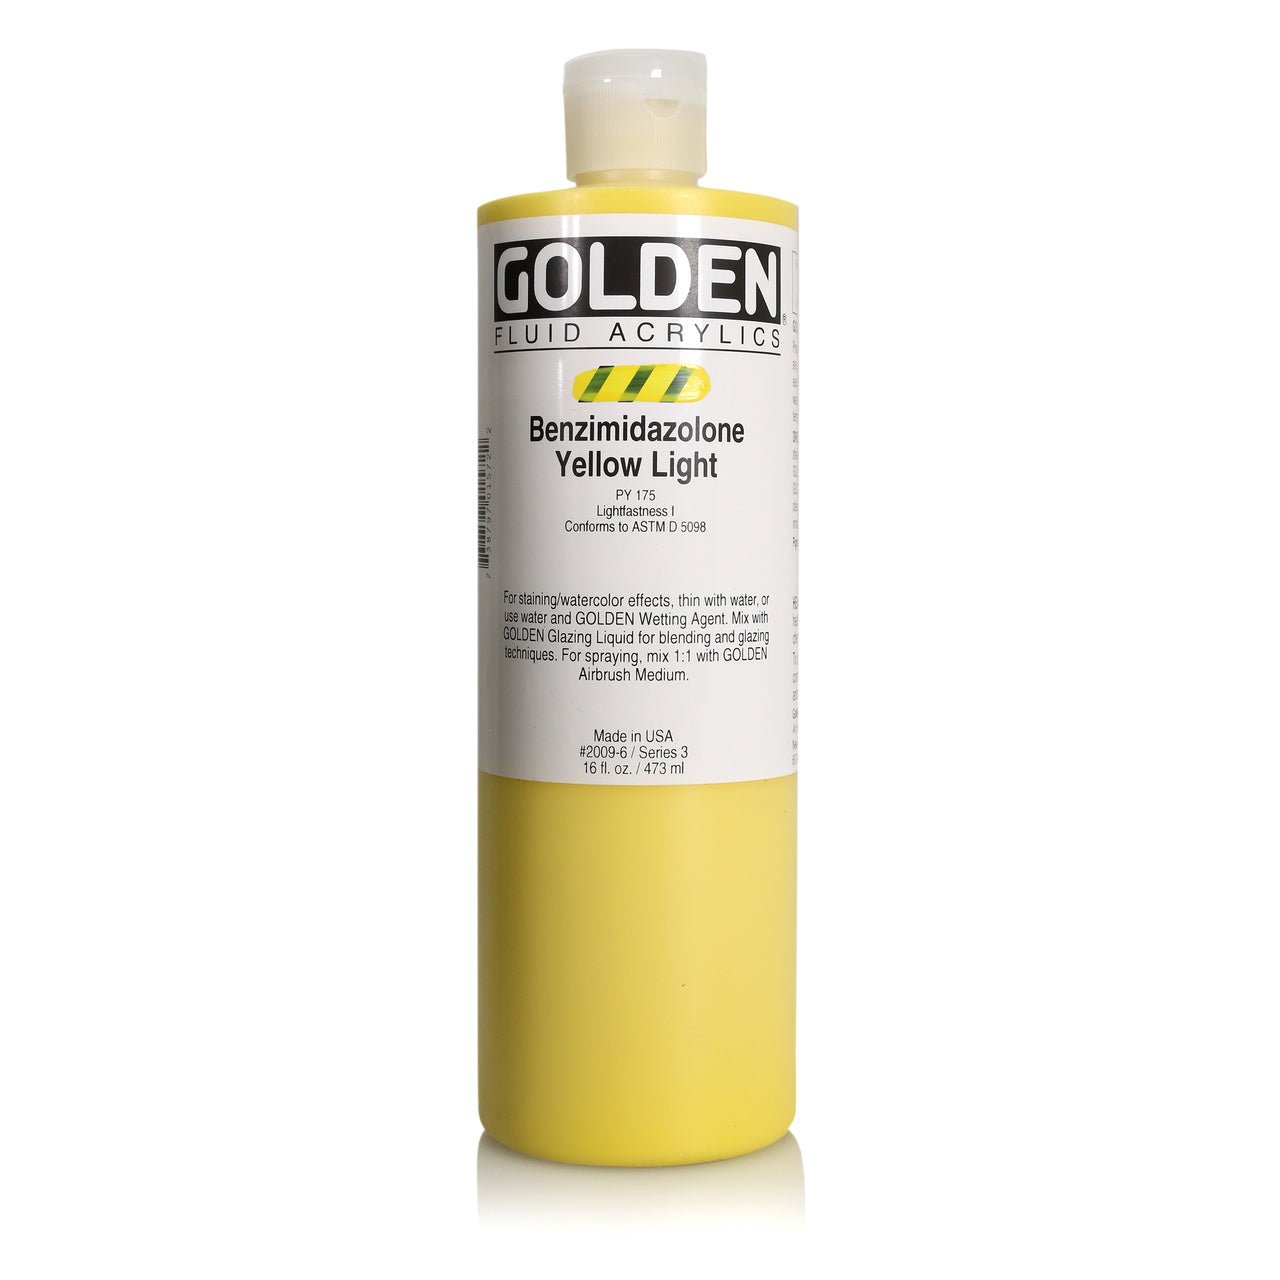 Golden Fluid Acrylics Benzimidazolone Yellow Light 16 oz